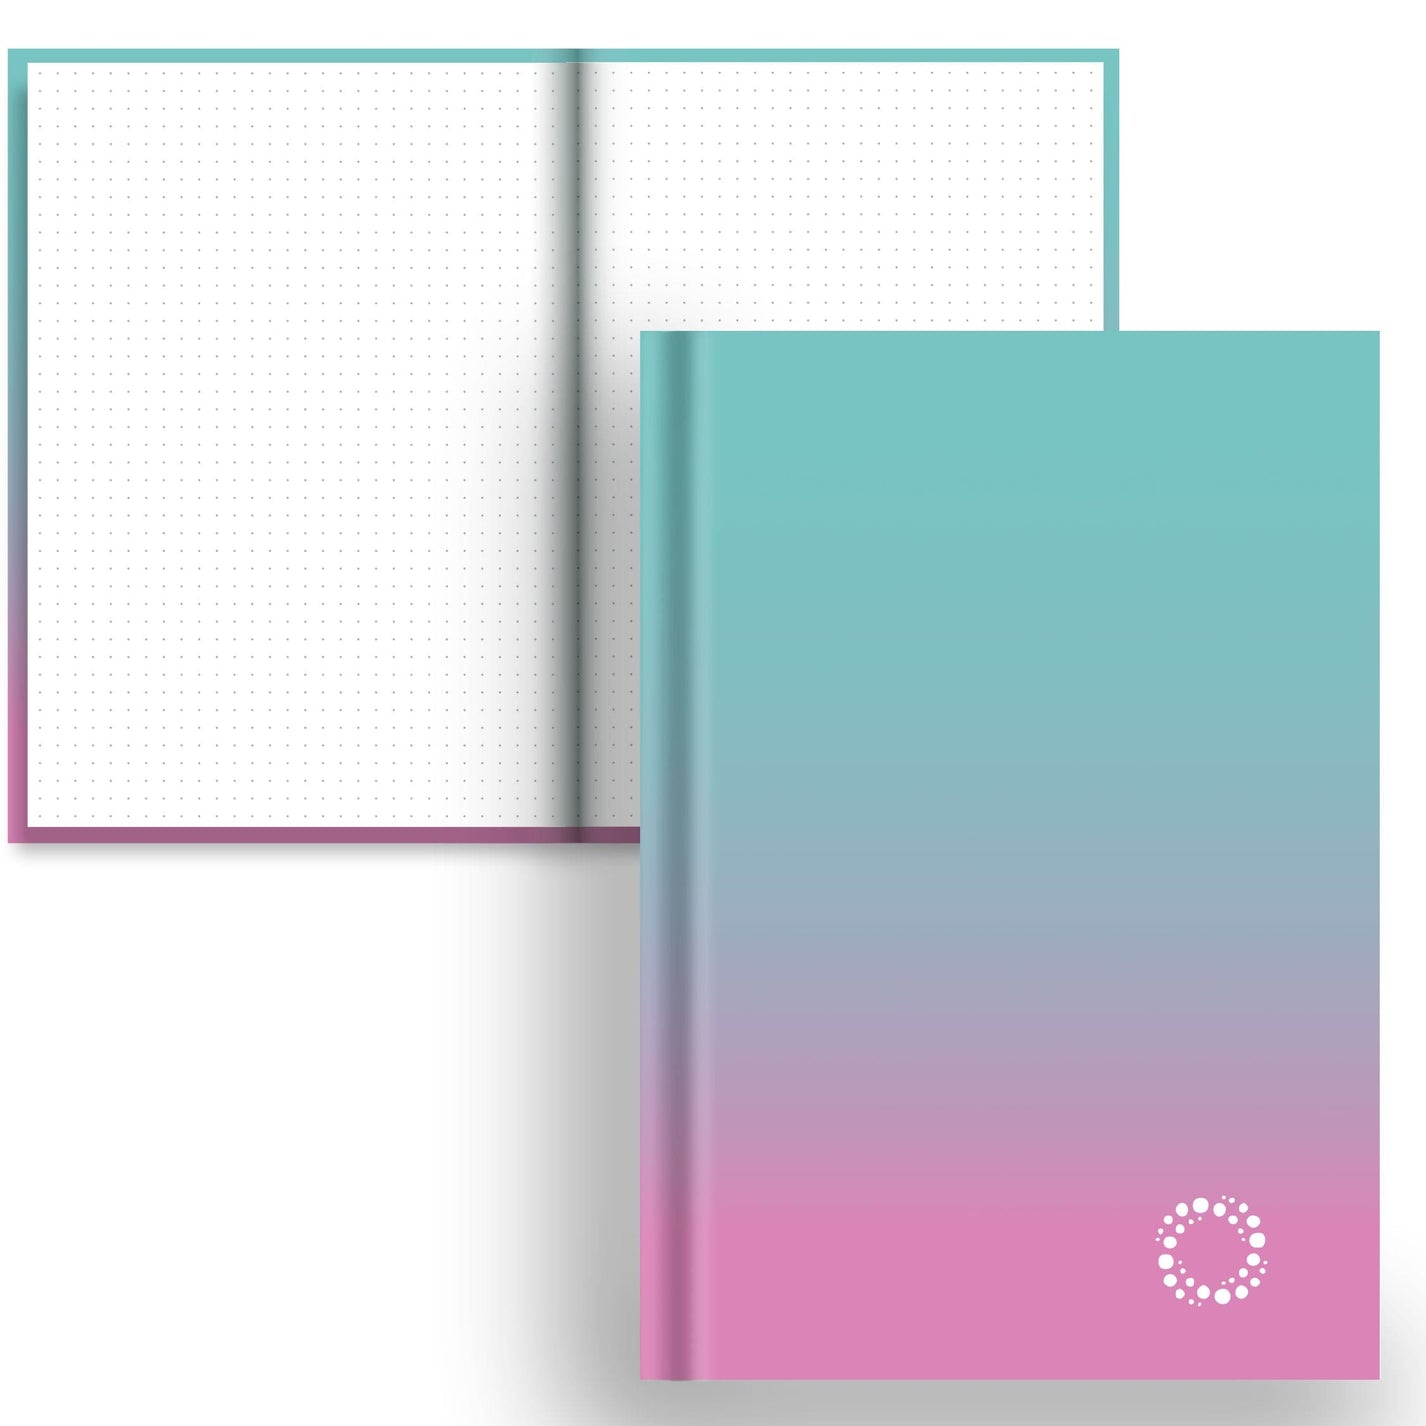 DayDot Journals Colour Fade Dot Grid Aqua and Blossom - A5 Hardback Notebook